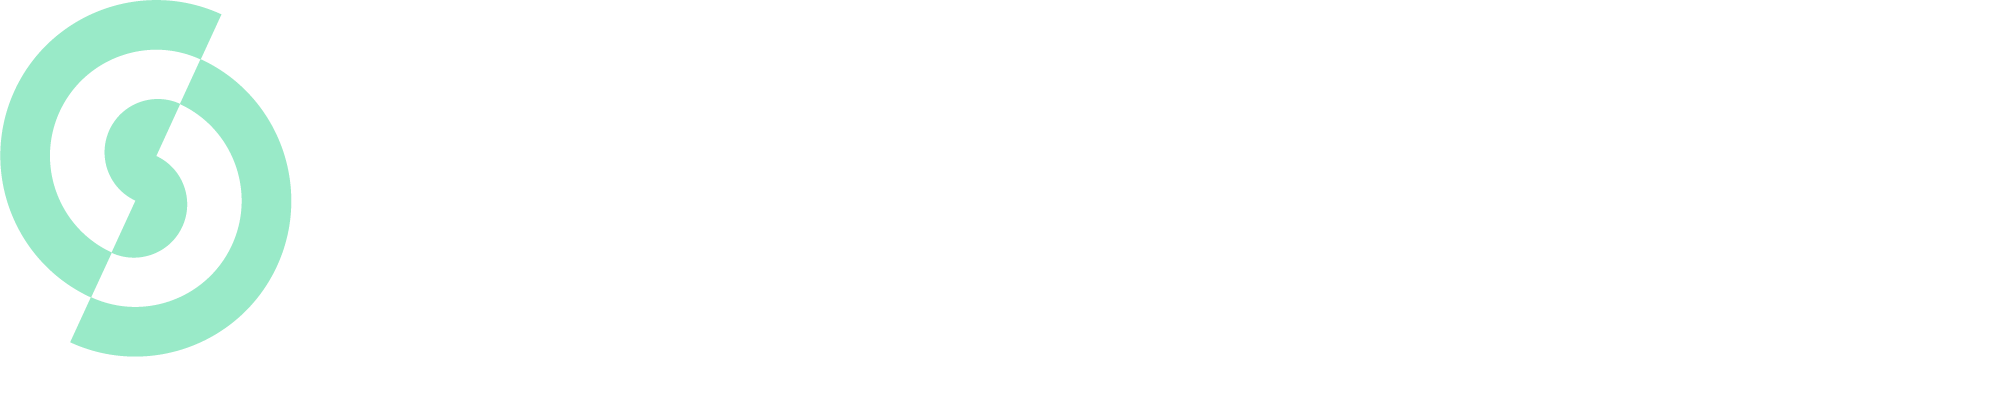 zerosync-logo